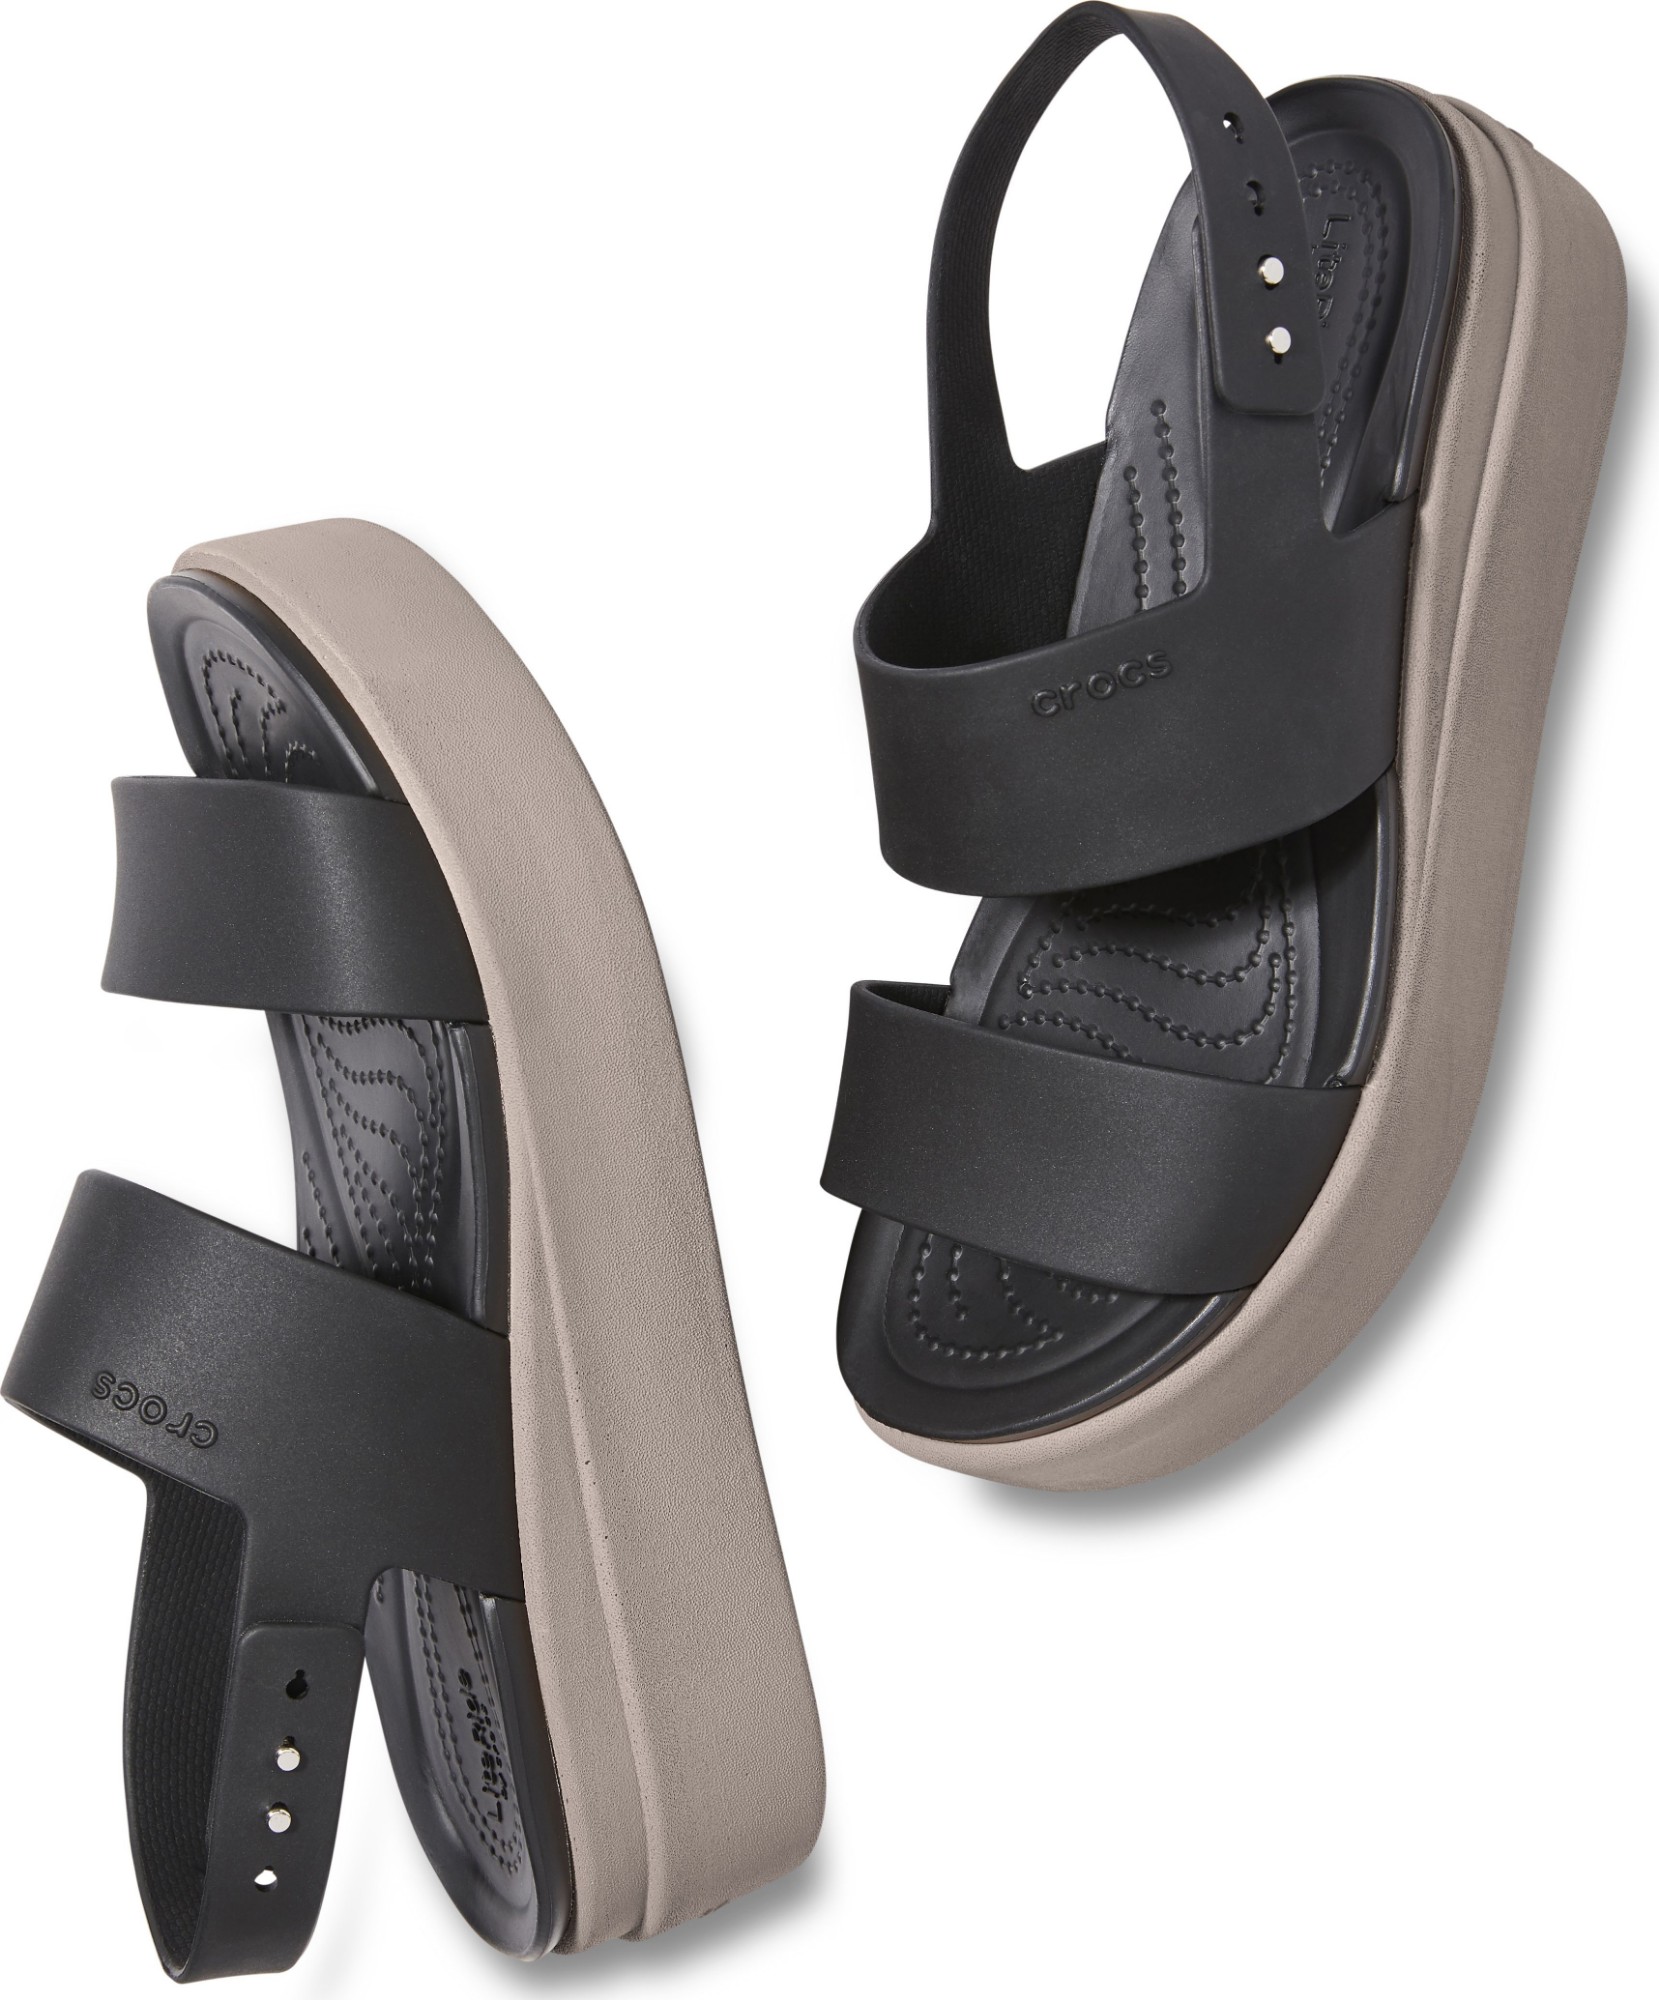 Giày sandal crocs chuẩn xịn, chống hôi chân, nhựa tế bào êm, mềm, dẻo, bền,  đi mưa, lội nước, đi biển đế xuồng  blooklyn low wedge màu đen |  